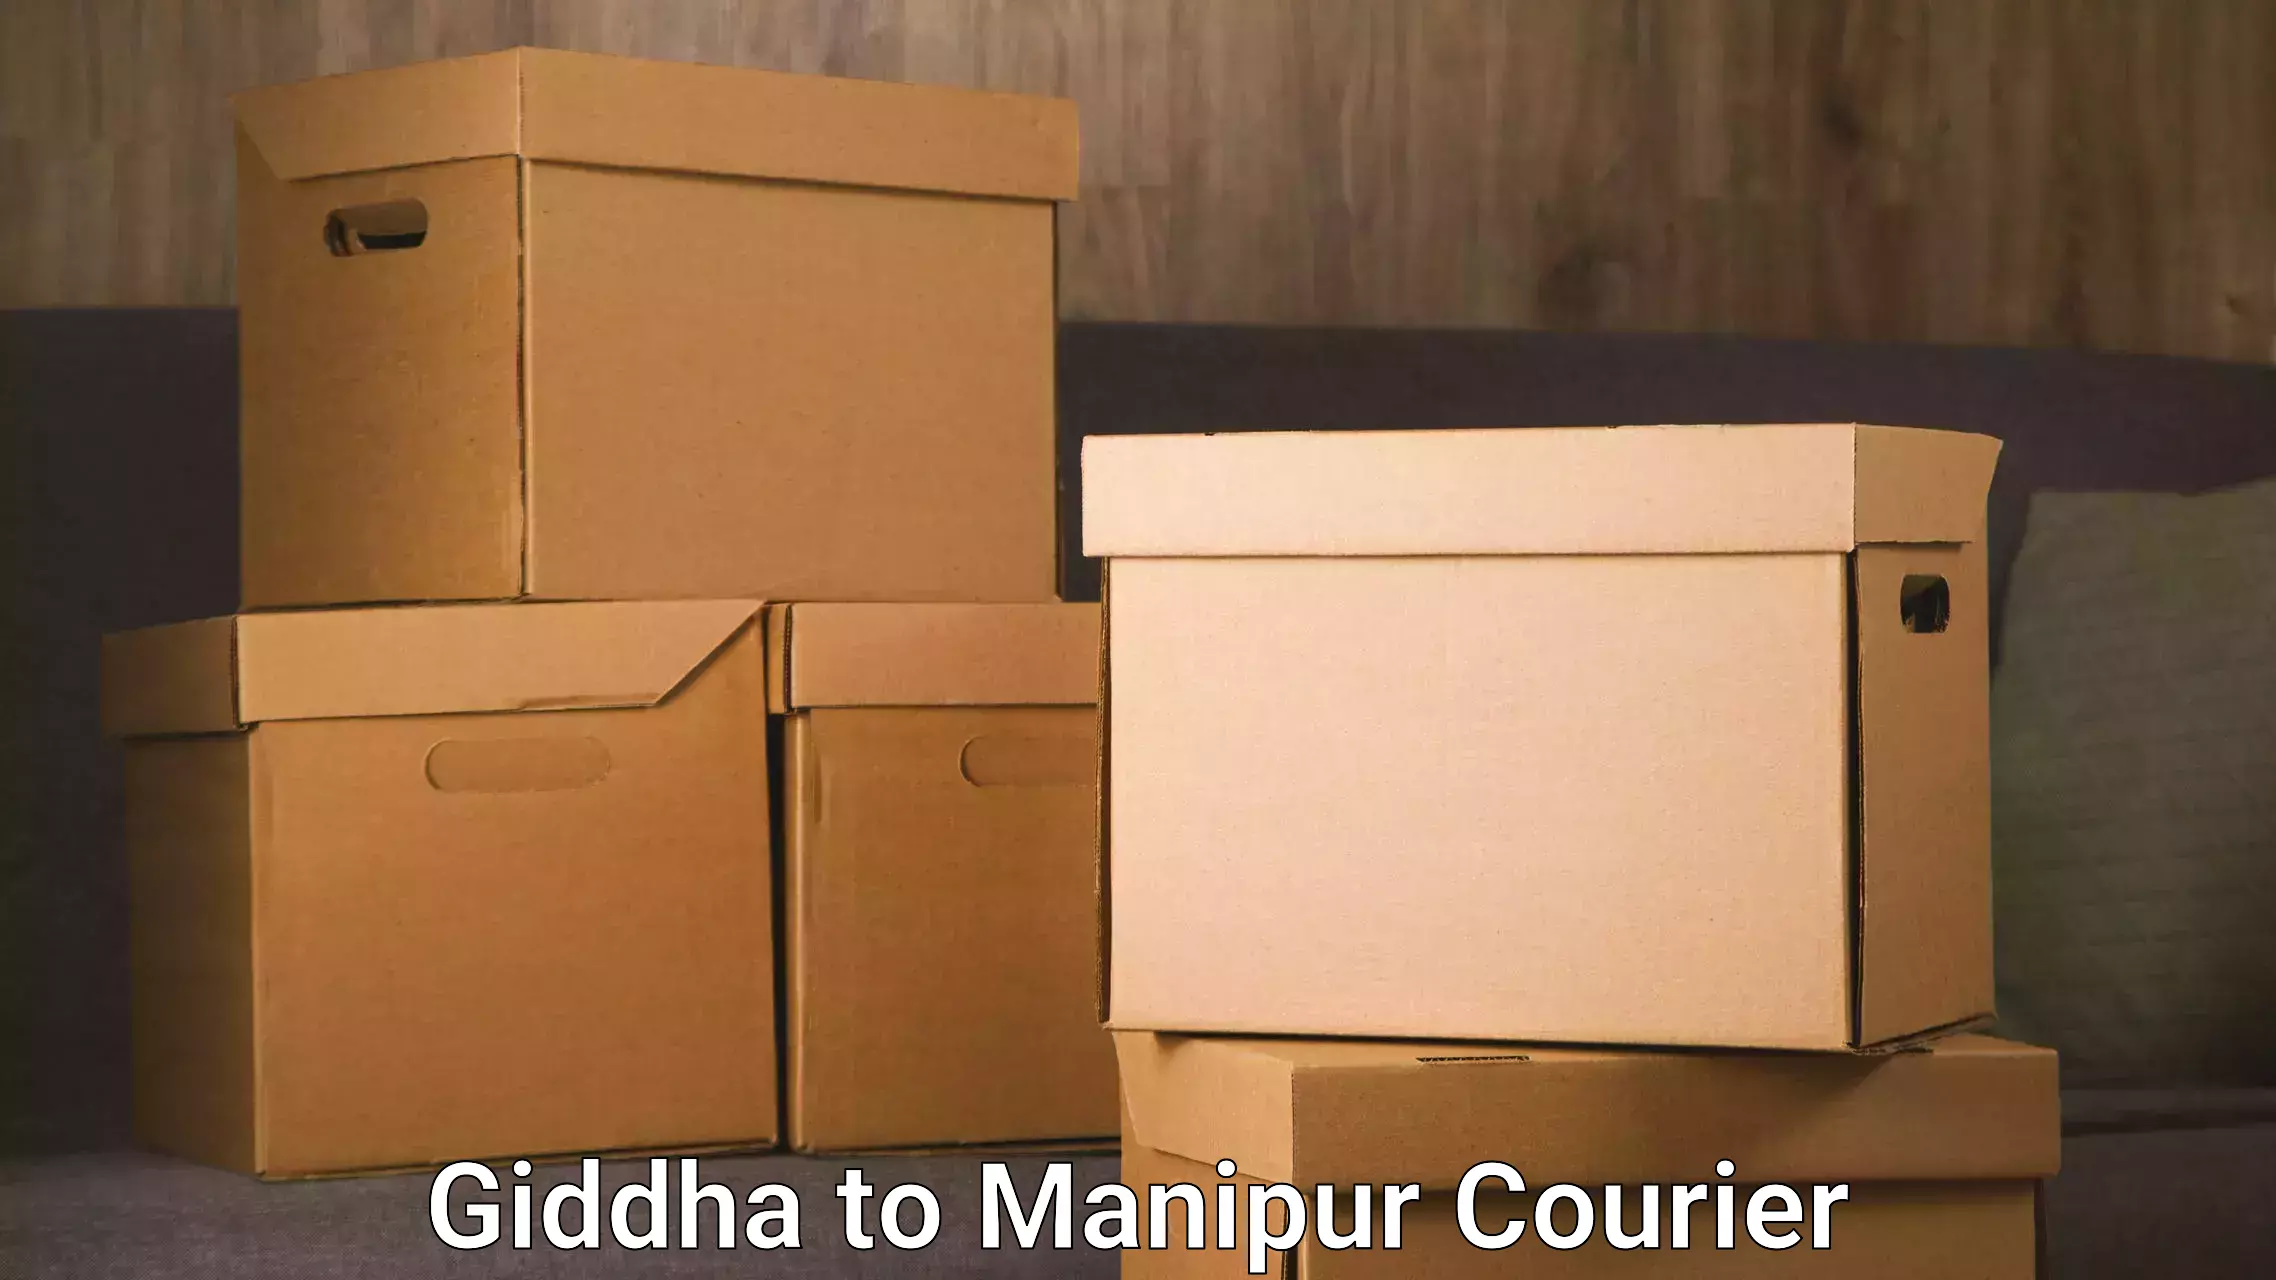 Furniture moving service Giddha to IIIT Senapati